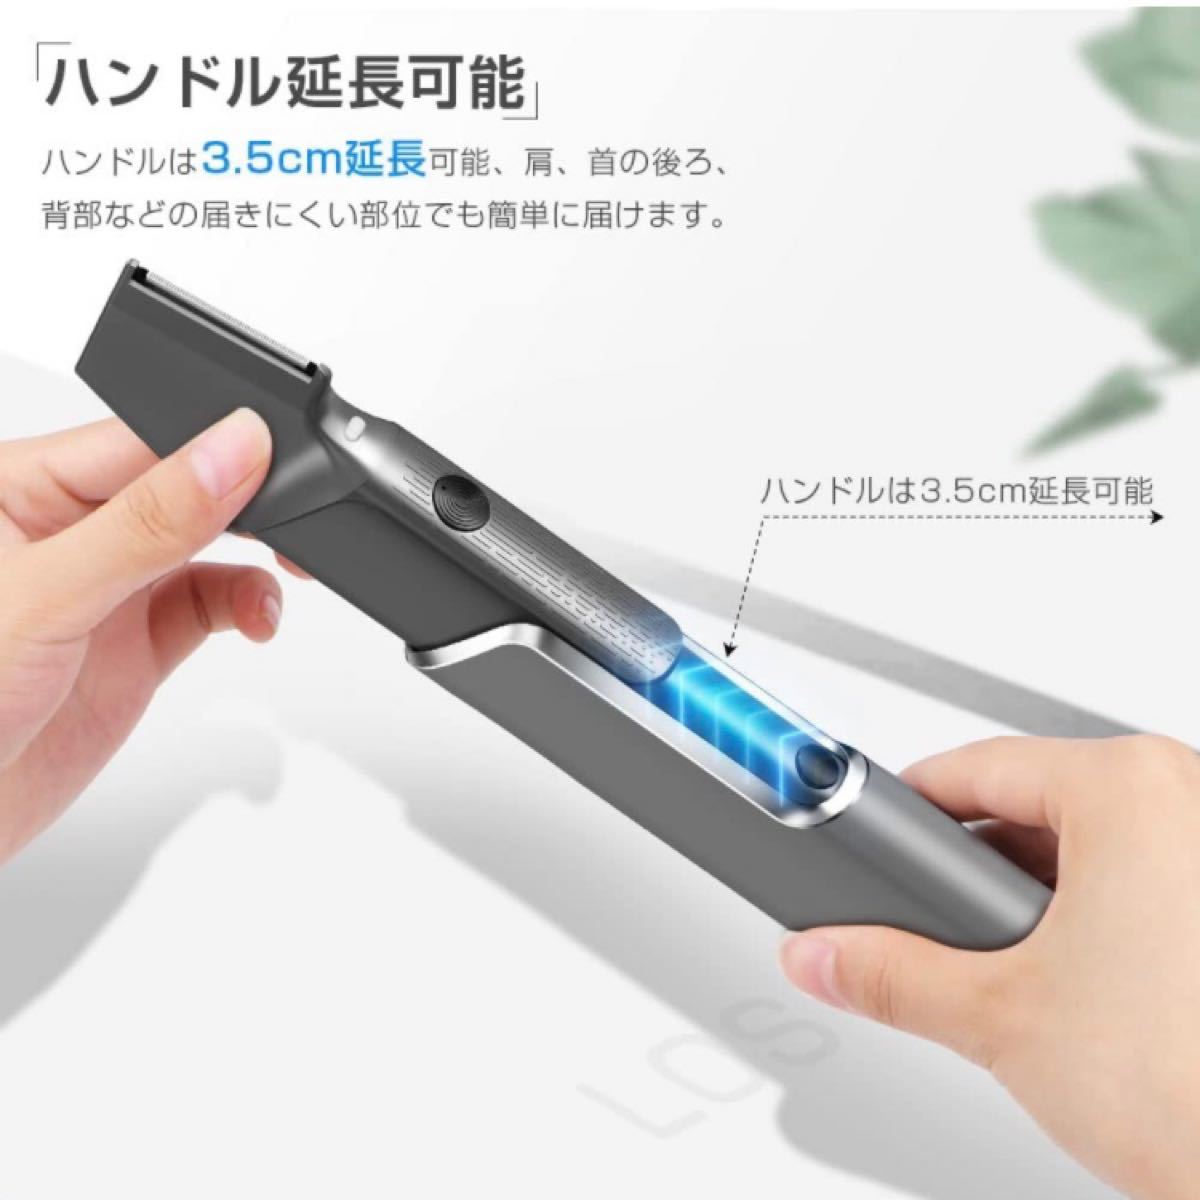 【チタントリマー】 電気シェーバー ボディシェーバー USB充電 防水 髭剃り